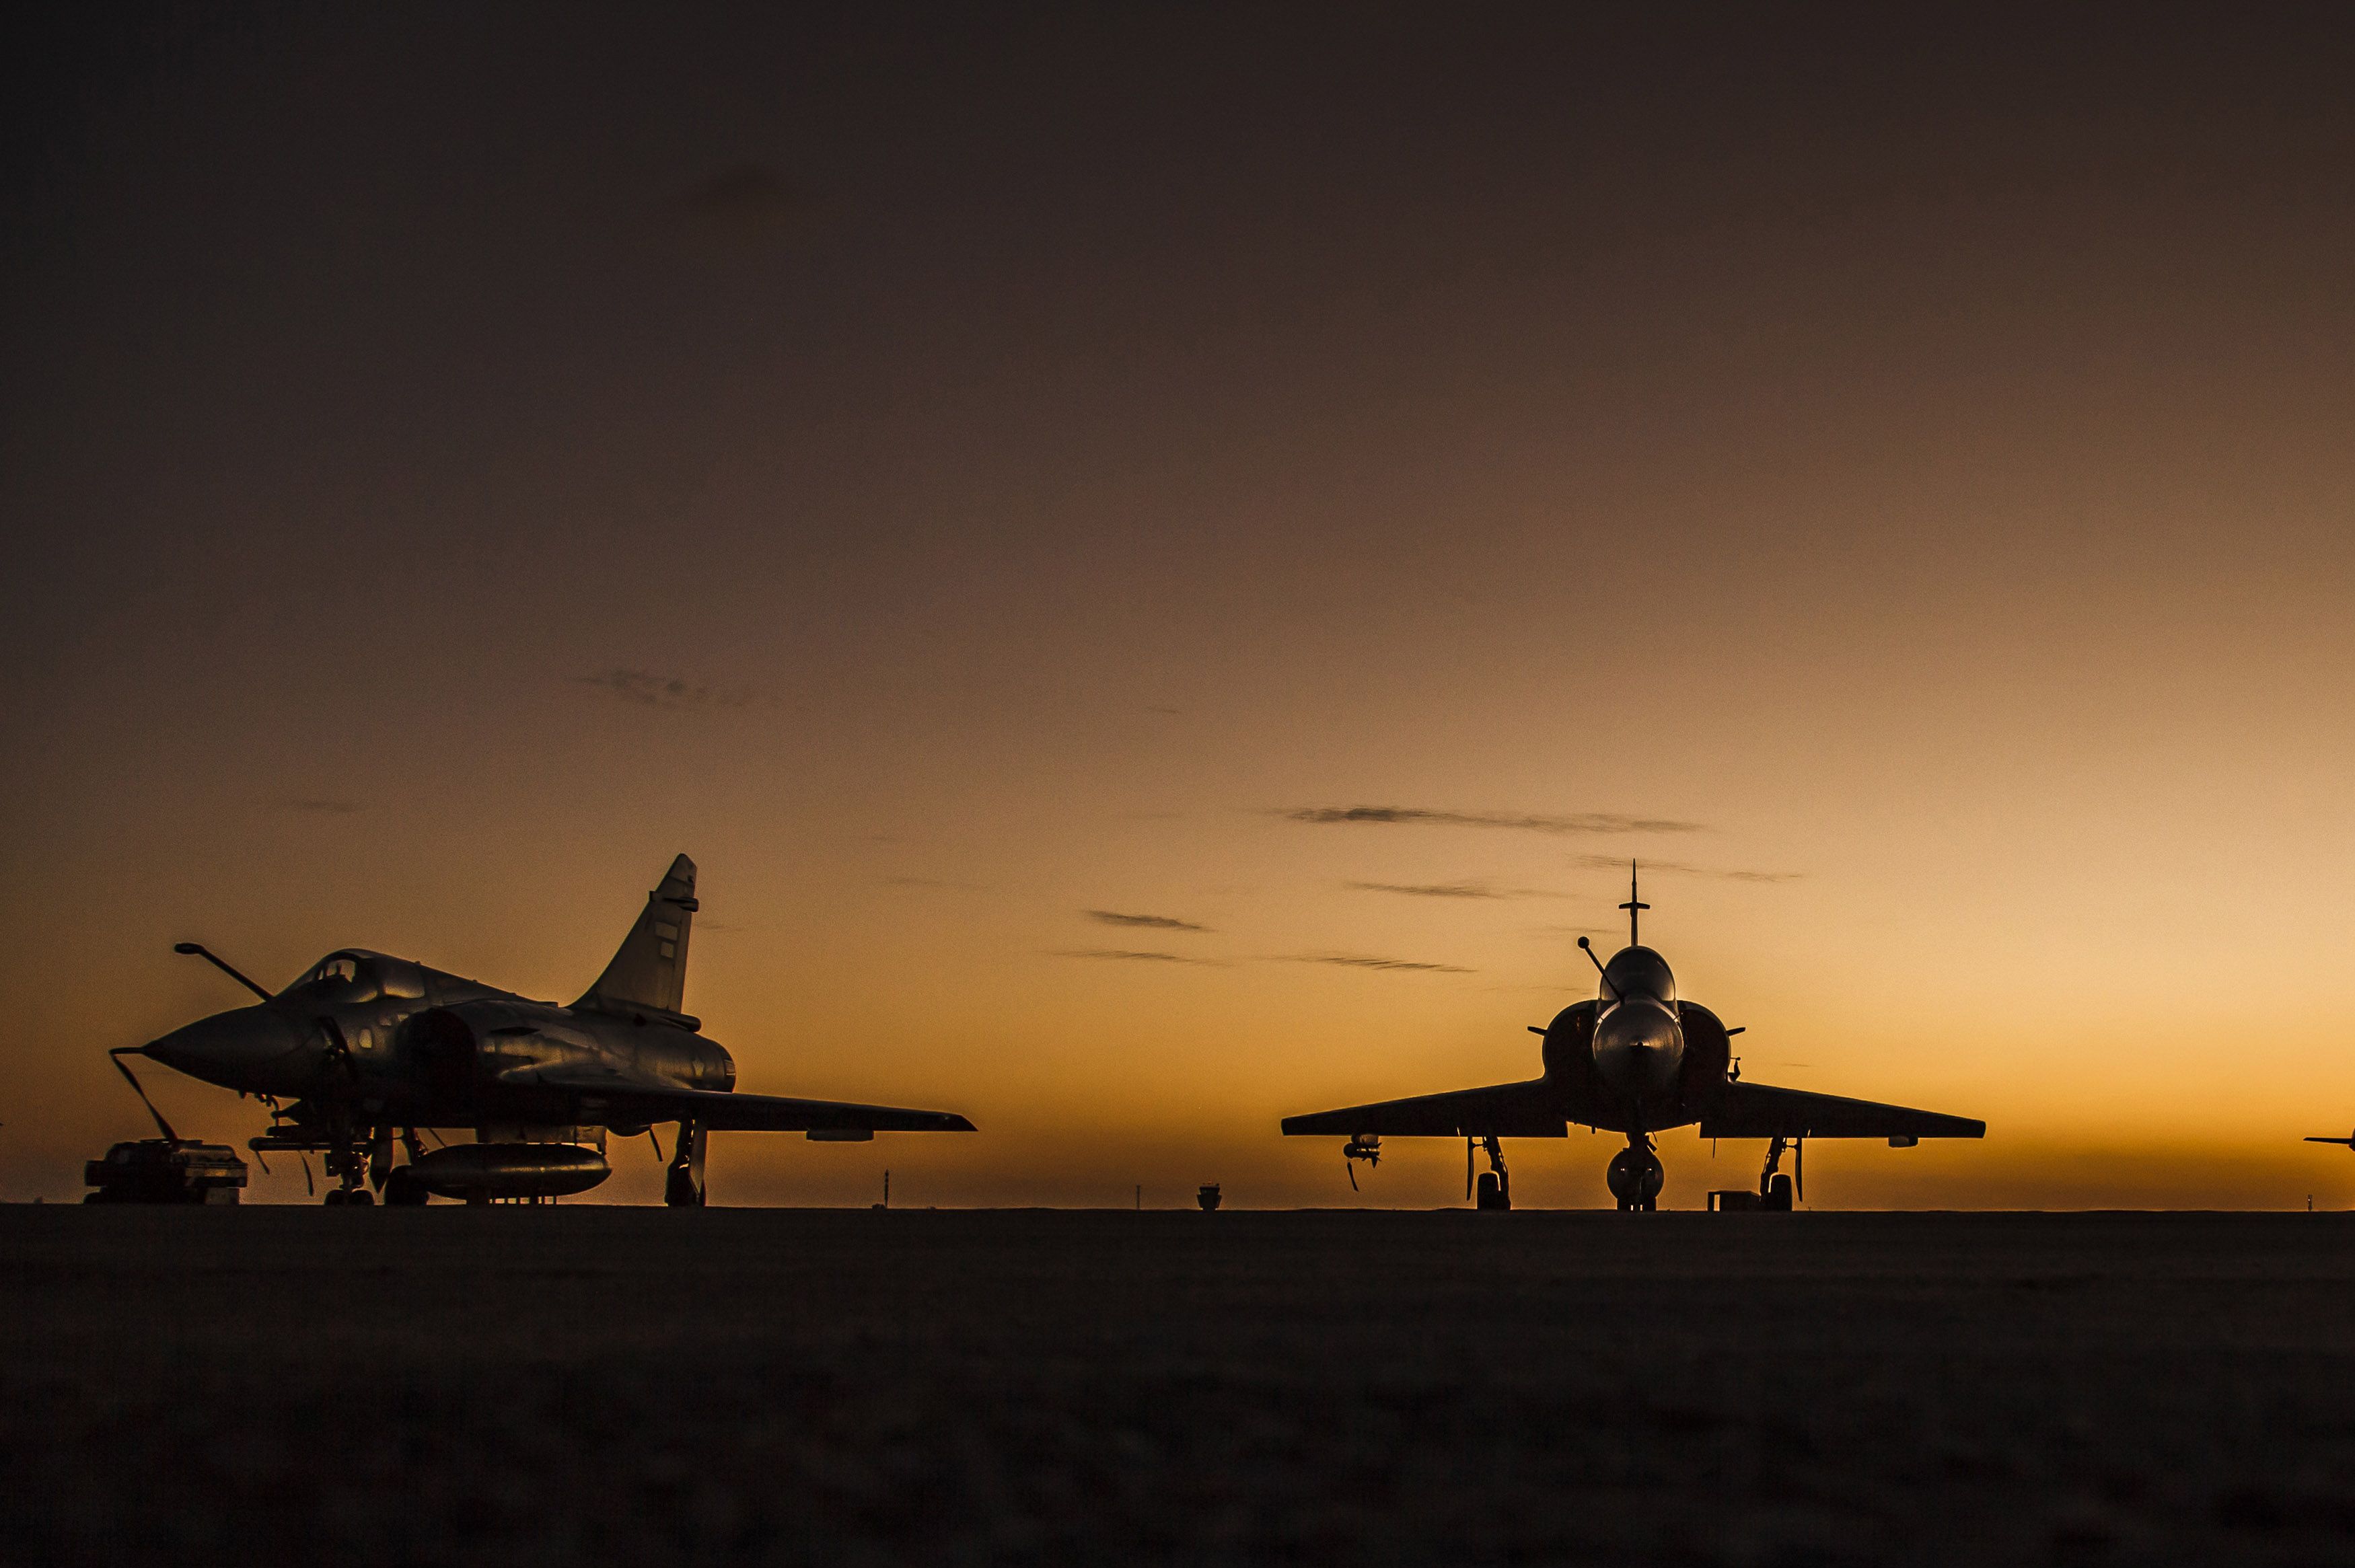 Dassault Mirage 2000 Jet Fighter Aircraft Warplane Sunset Silhouette Wallpaper:3500x2331